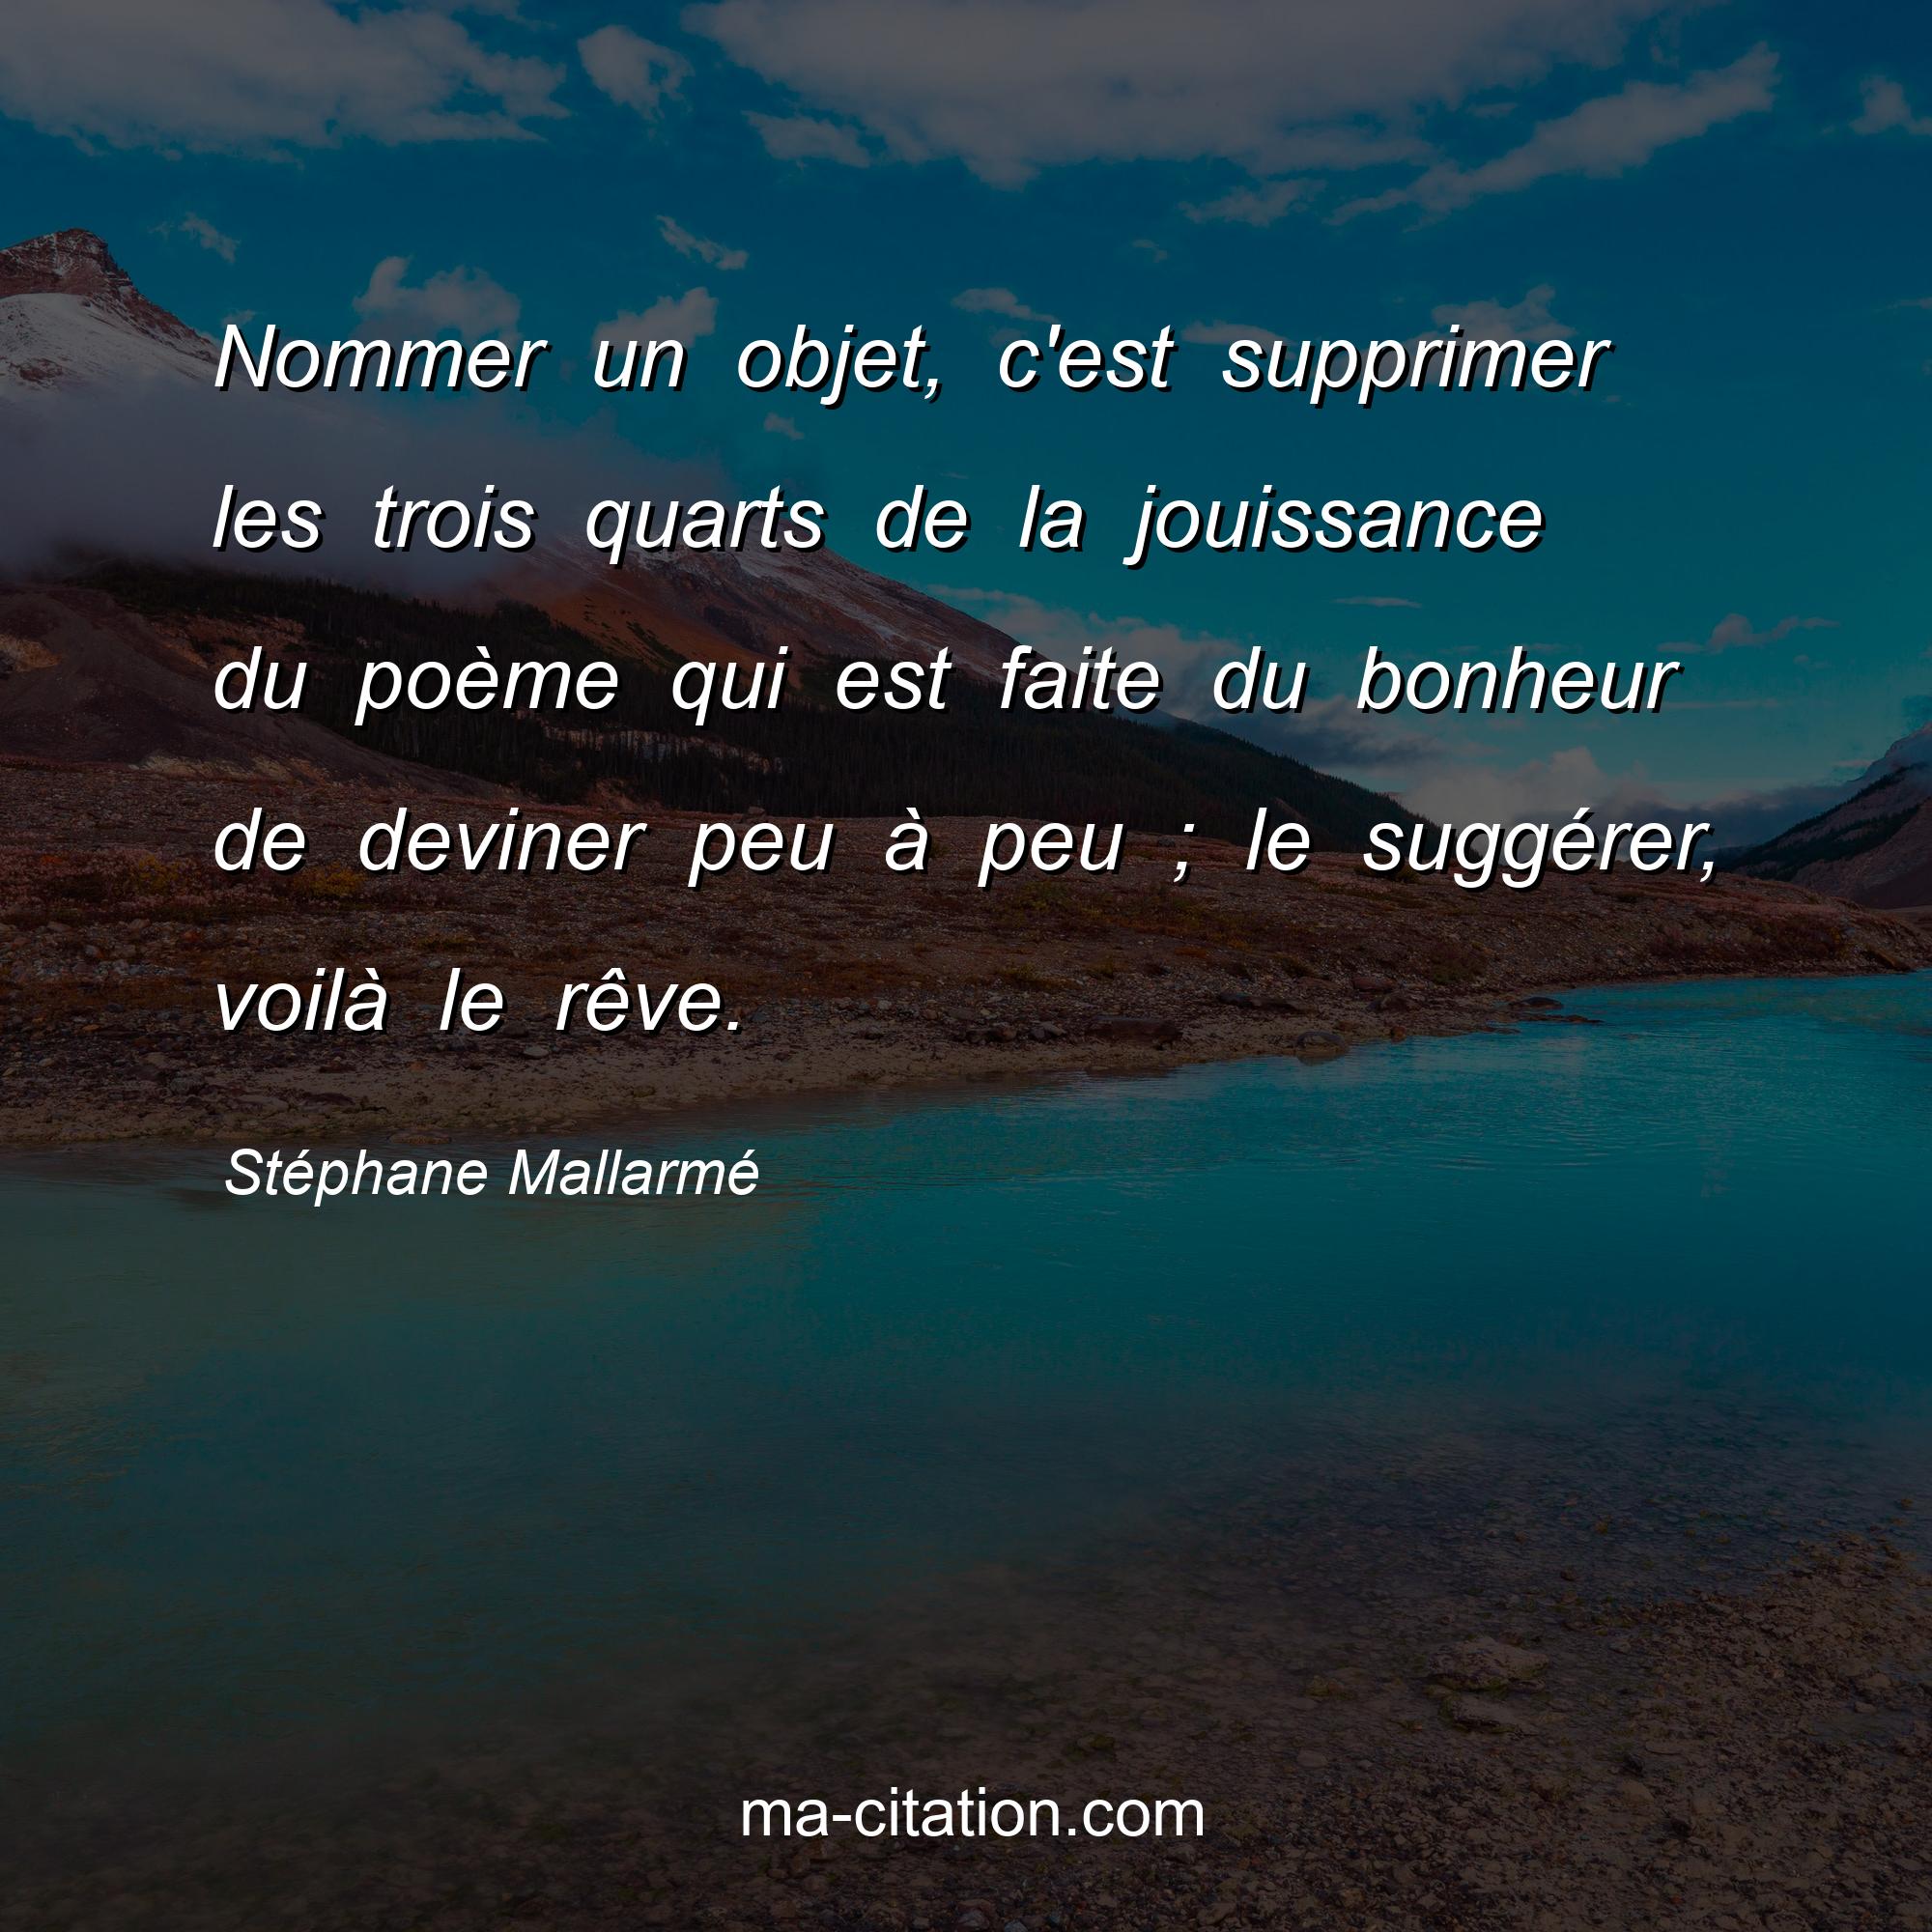 Stéphane Mallarmé : Nommer un objet, c'est supprimer les trois quarts de la jouissance du poème qui est faite du bonheur de deviner peu à peu ; le suggérer, voilà le rêve.